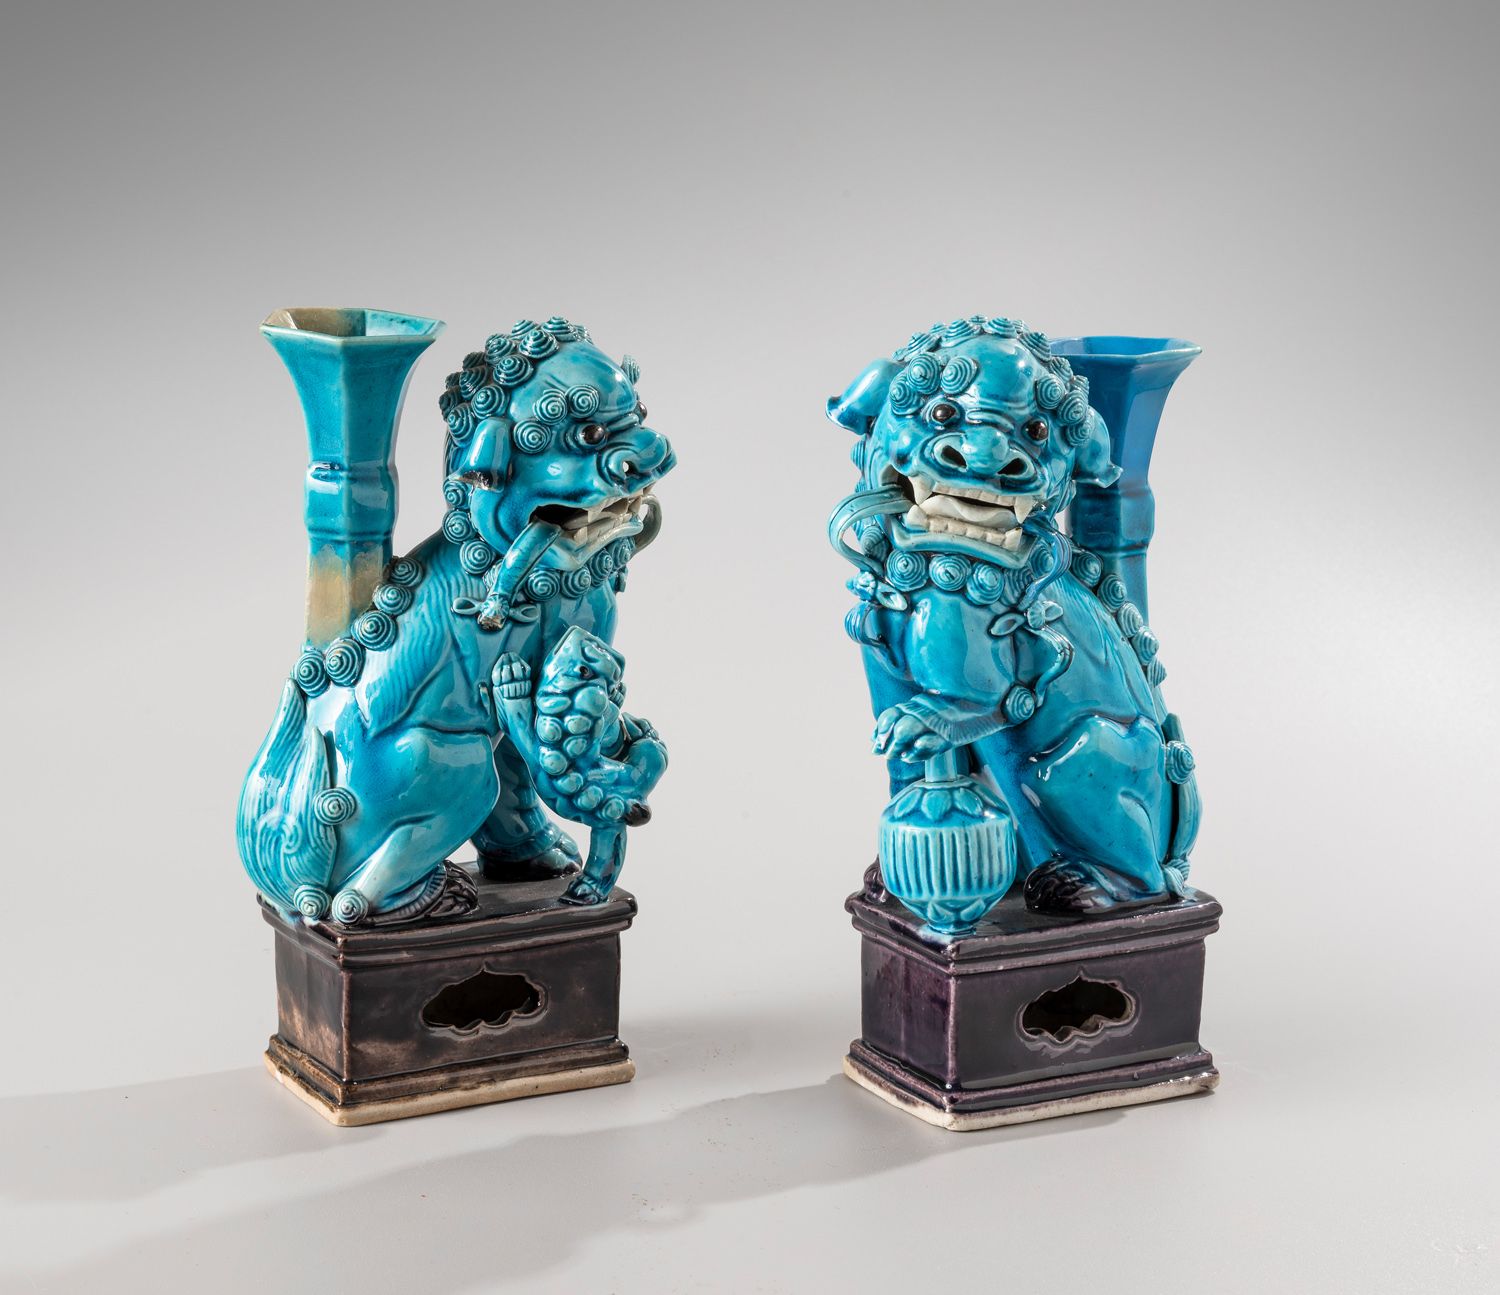 Null CHINA, siglo XVIII

Par de incensarios de cerámica esmaltada azul turquesa
&hellip;